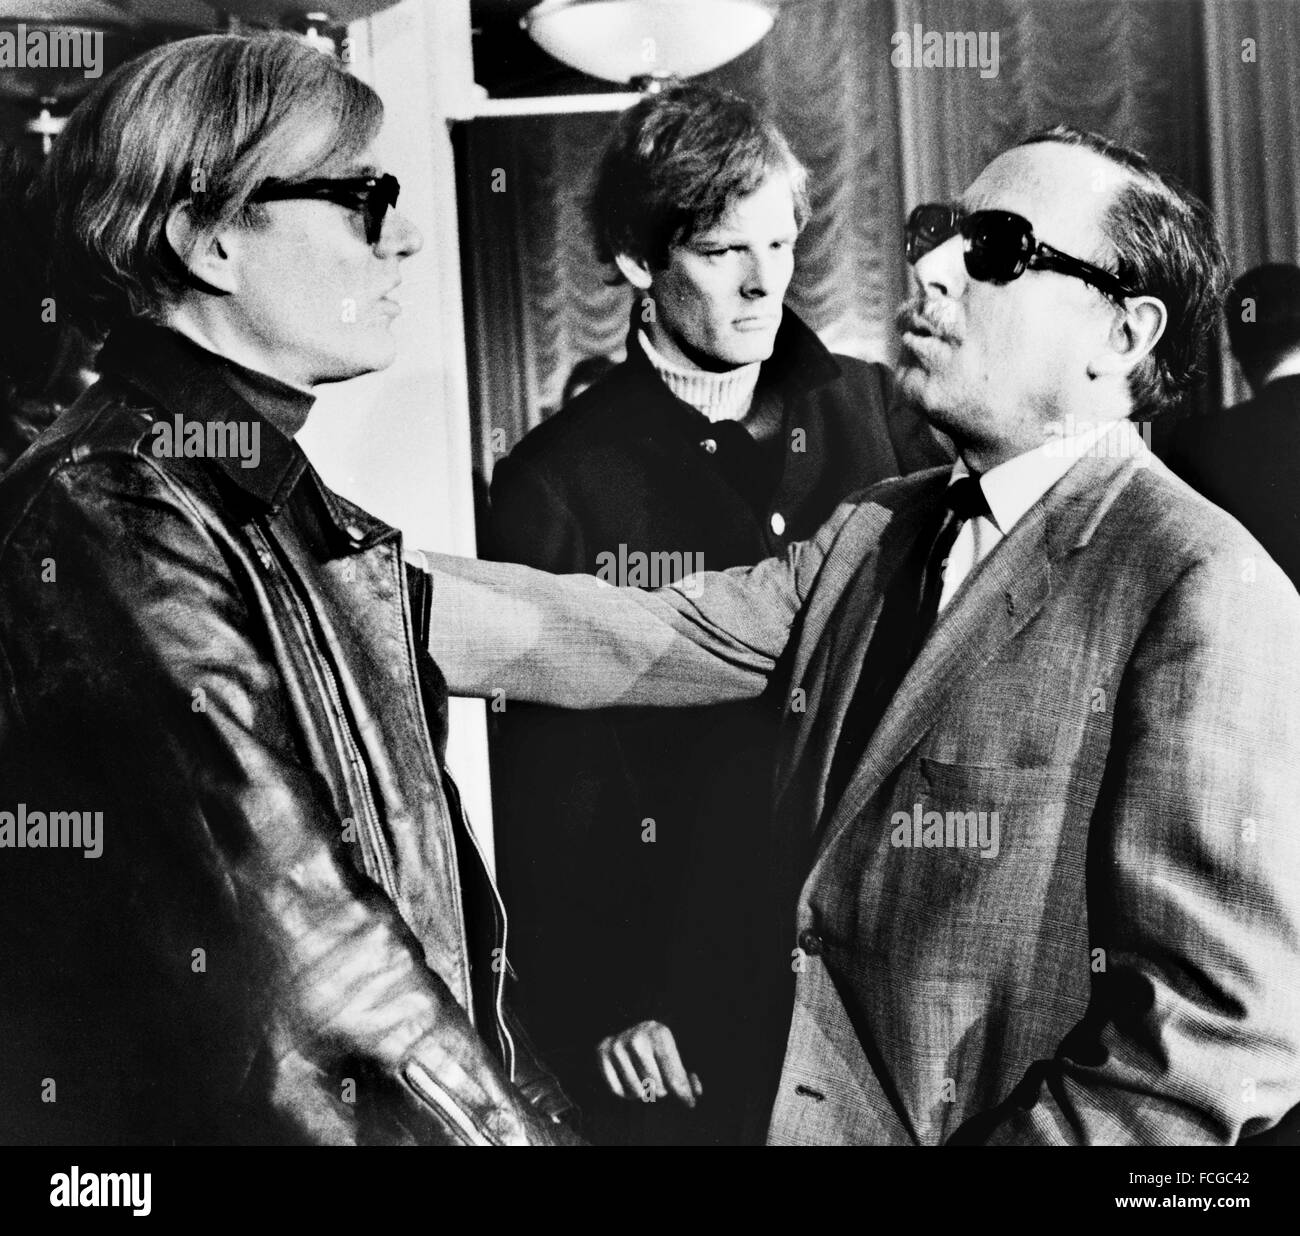 Künstler Andy Warhol (links) und Dramatiker Tennessee Williams (rechts) mit Regisseur Paul Morrissey im Hintergrund), S.S. Frankreich, 1967 Stockfoto